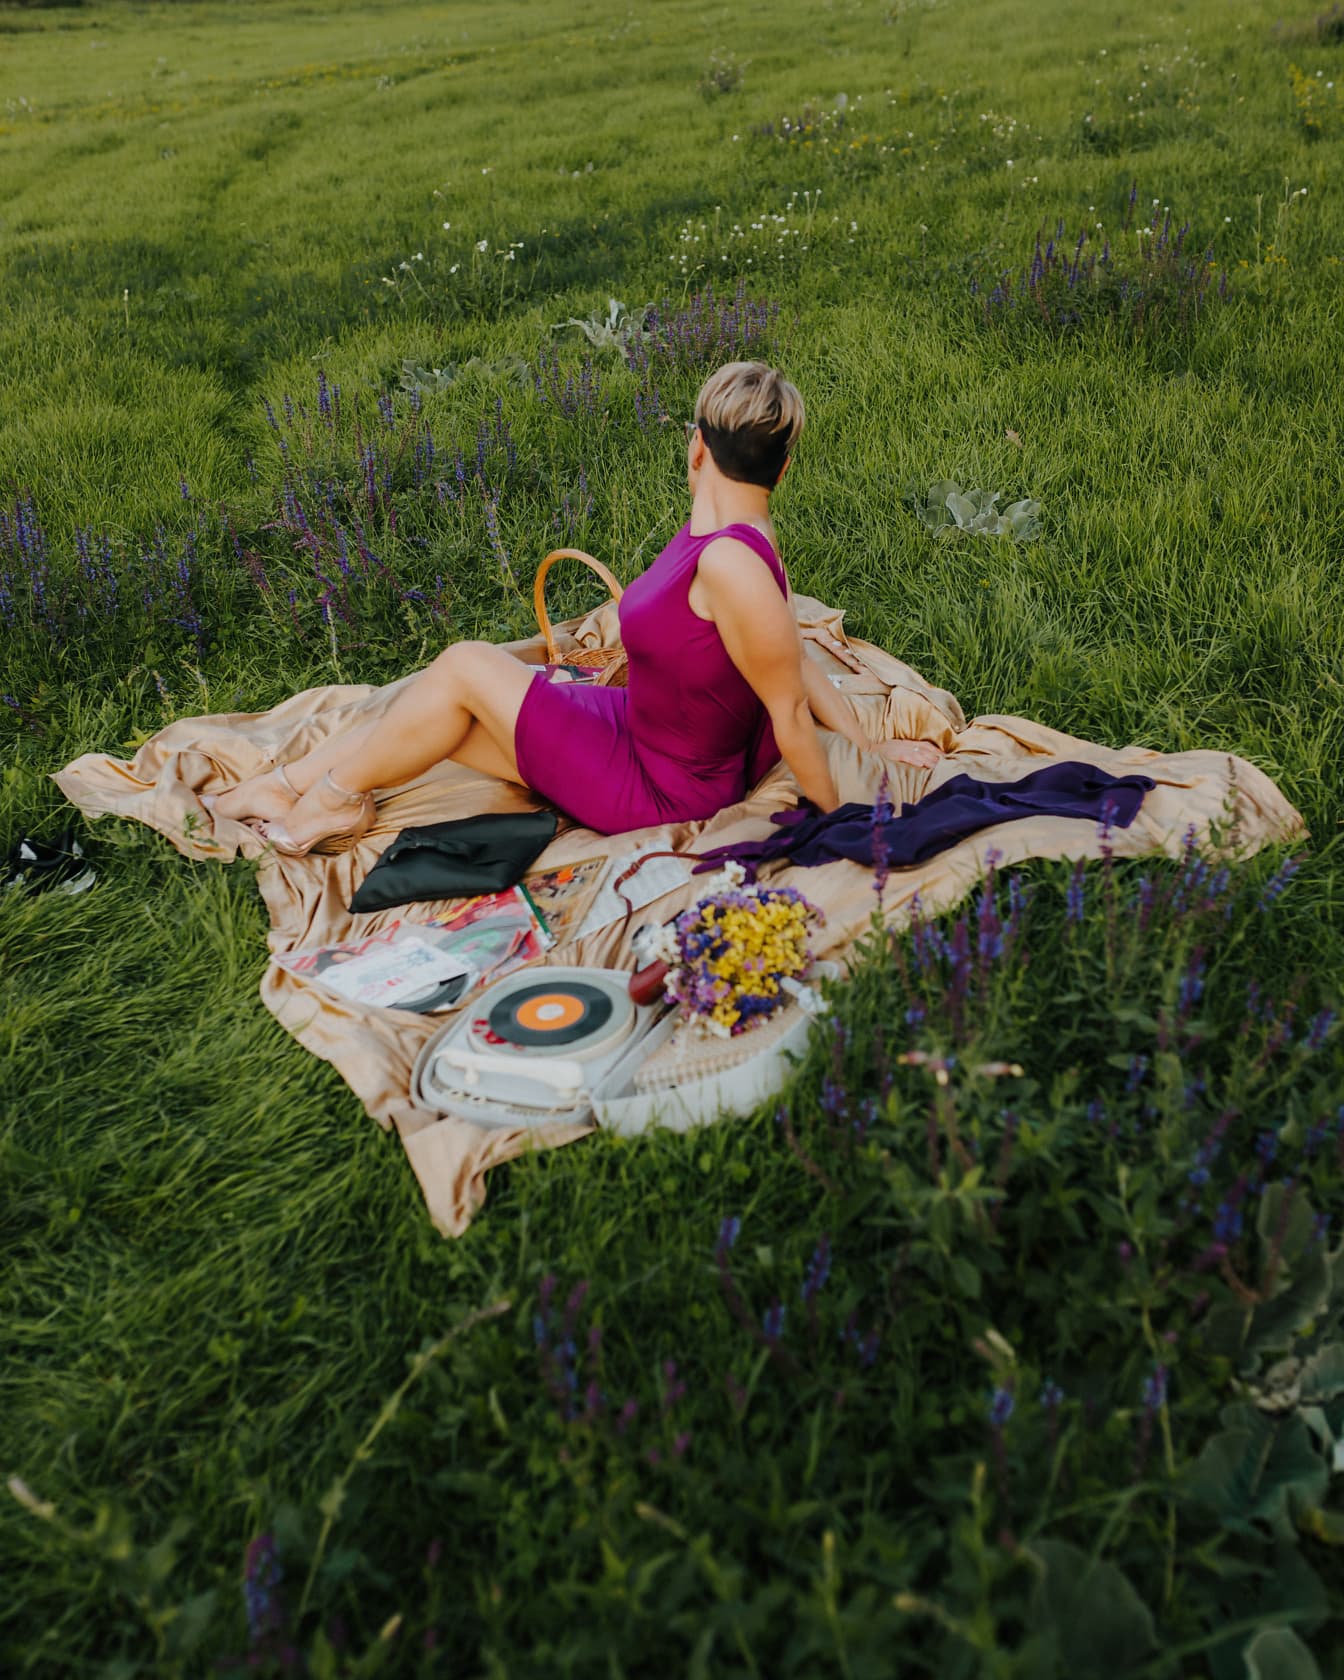 Luksusowy strój piknikowy, fioletowa sukienka i fantazyjne buty